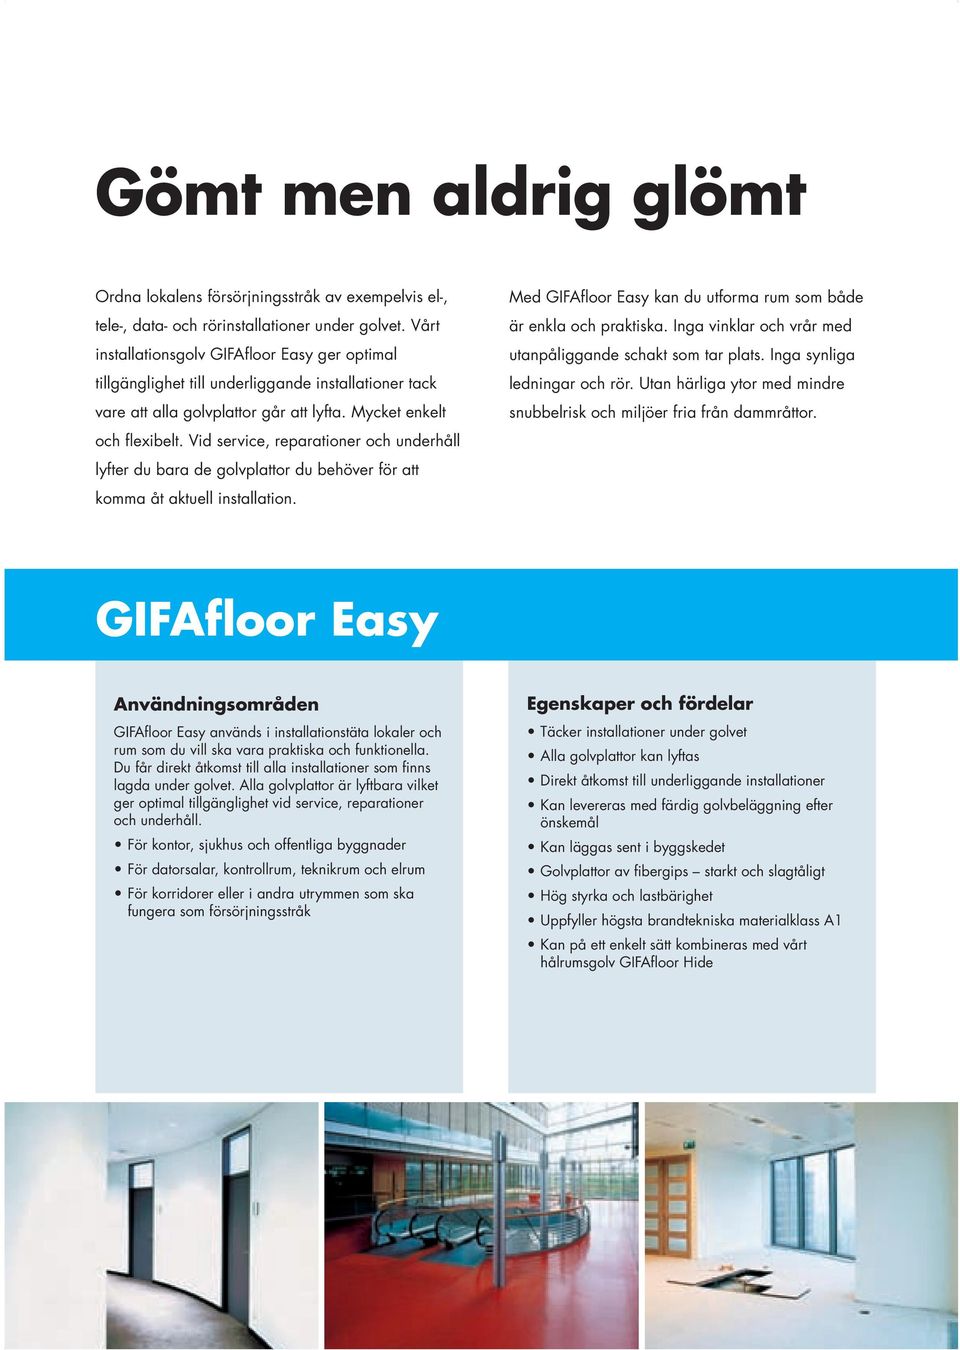 Vid service, reparationer och underhåll lyfter du bara de golvplattor du behöver för att komma åt aktuell installation. Med GIFAfloor Easy kan du utforma rum som både är enkla och praktiska.